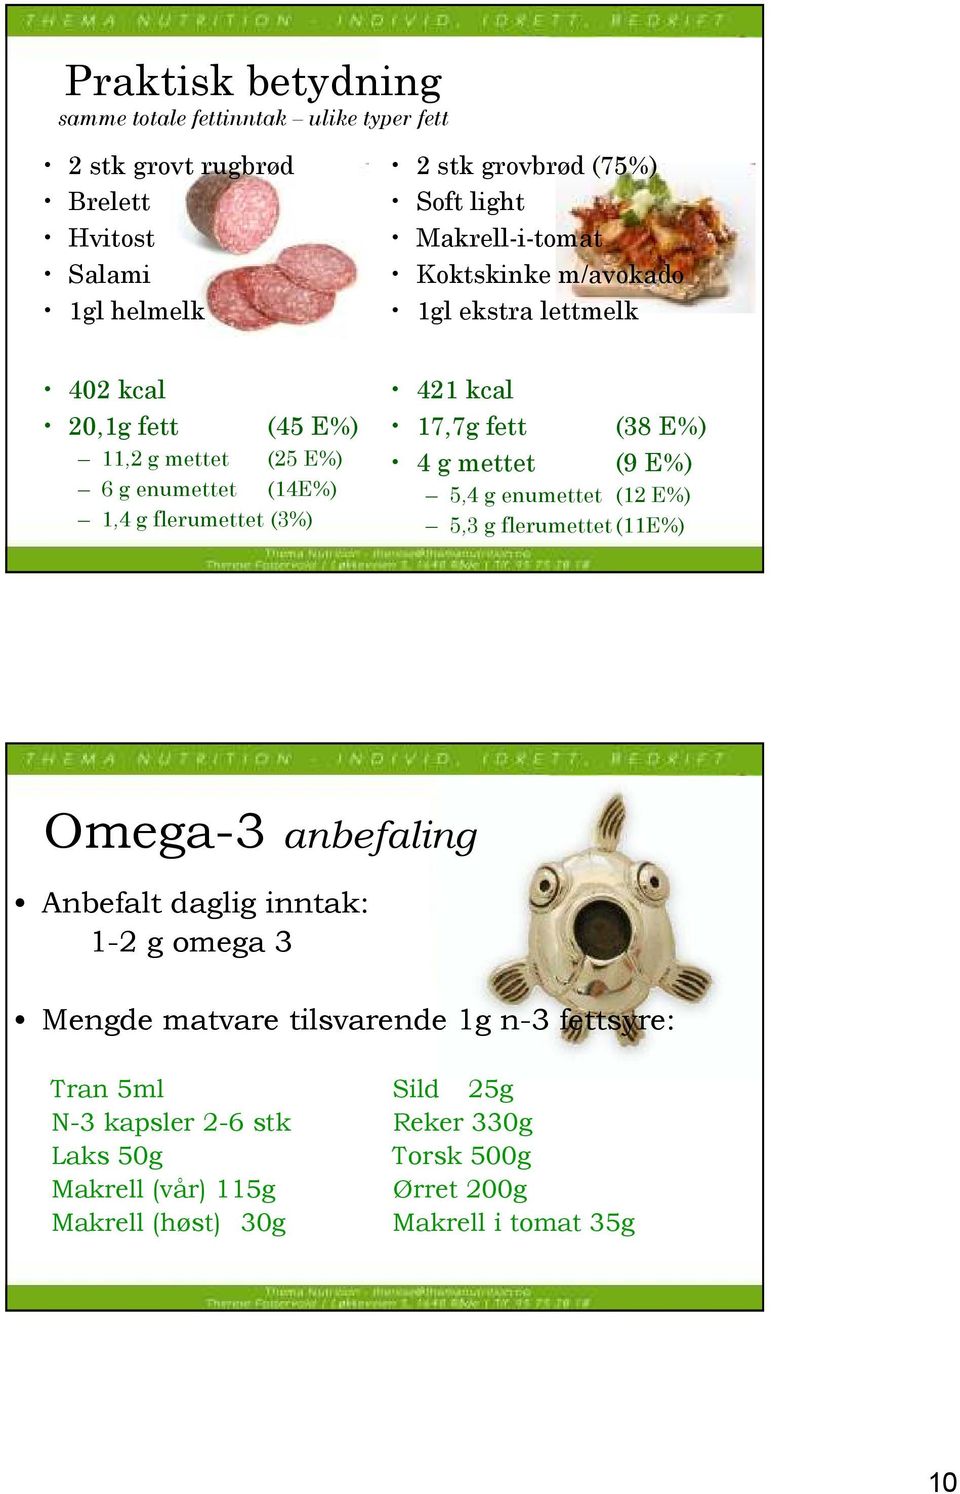 kcal 17,7g fett (38 E%) 4 g mettet (9 E%) 5,4 g enumettet (12 E%) 5,3 g flerumettet (11E%) Omega-3 anbefaling Anbefalt daglig inntak: 1-2 g omega 3 Mengde